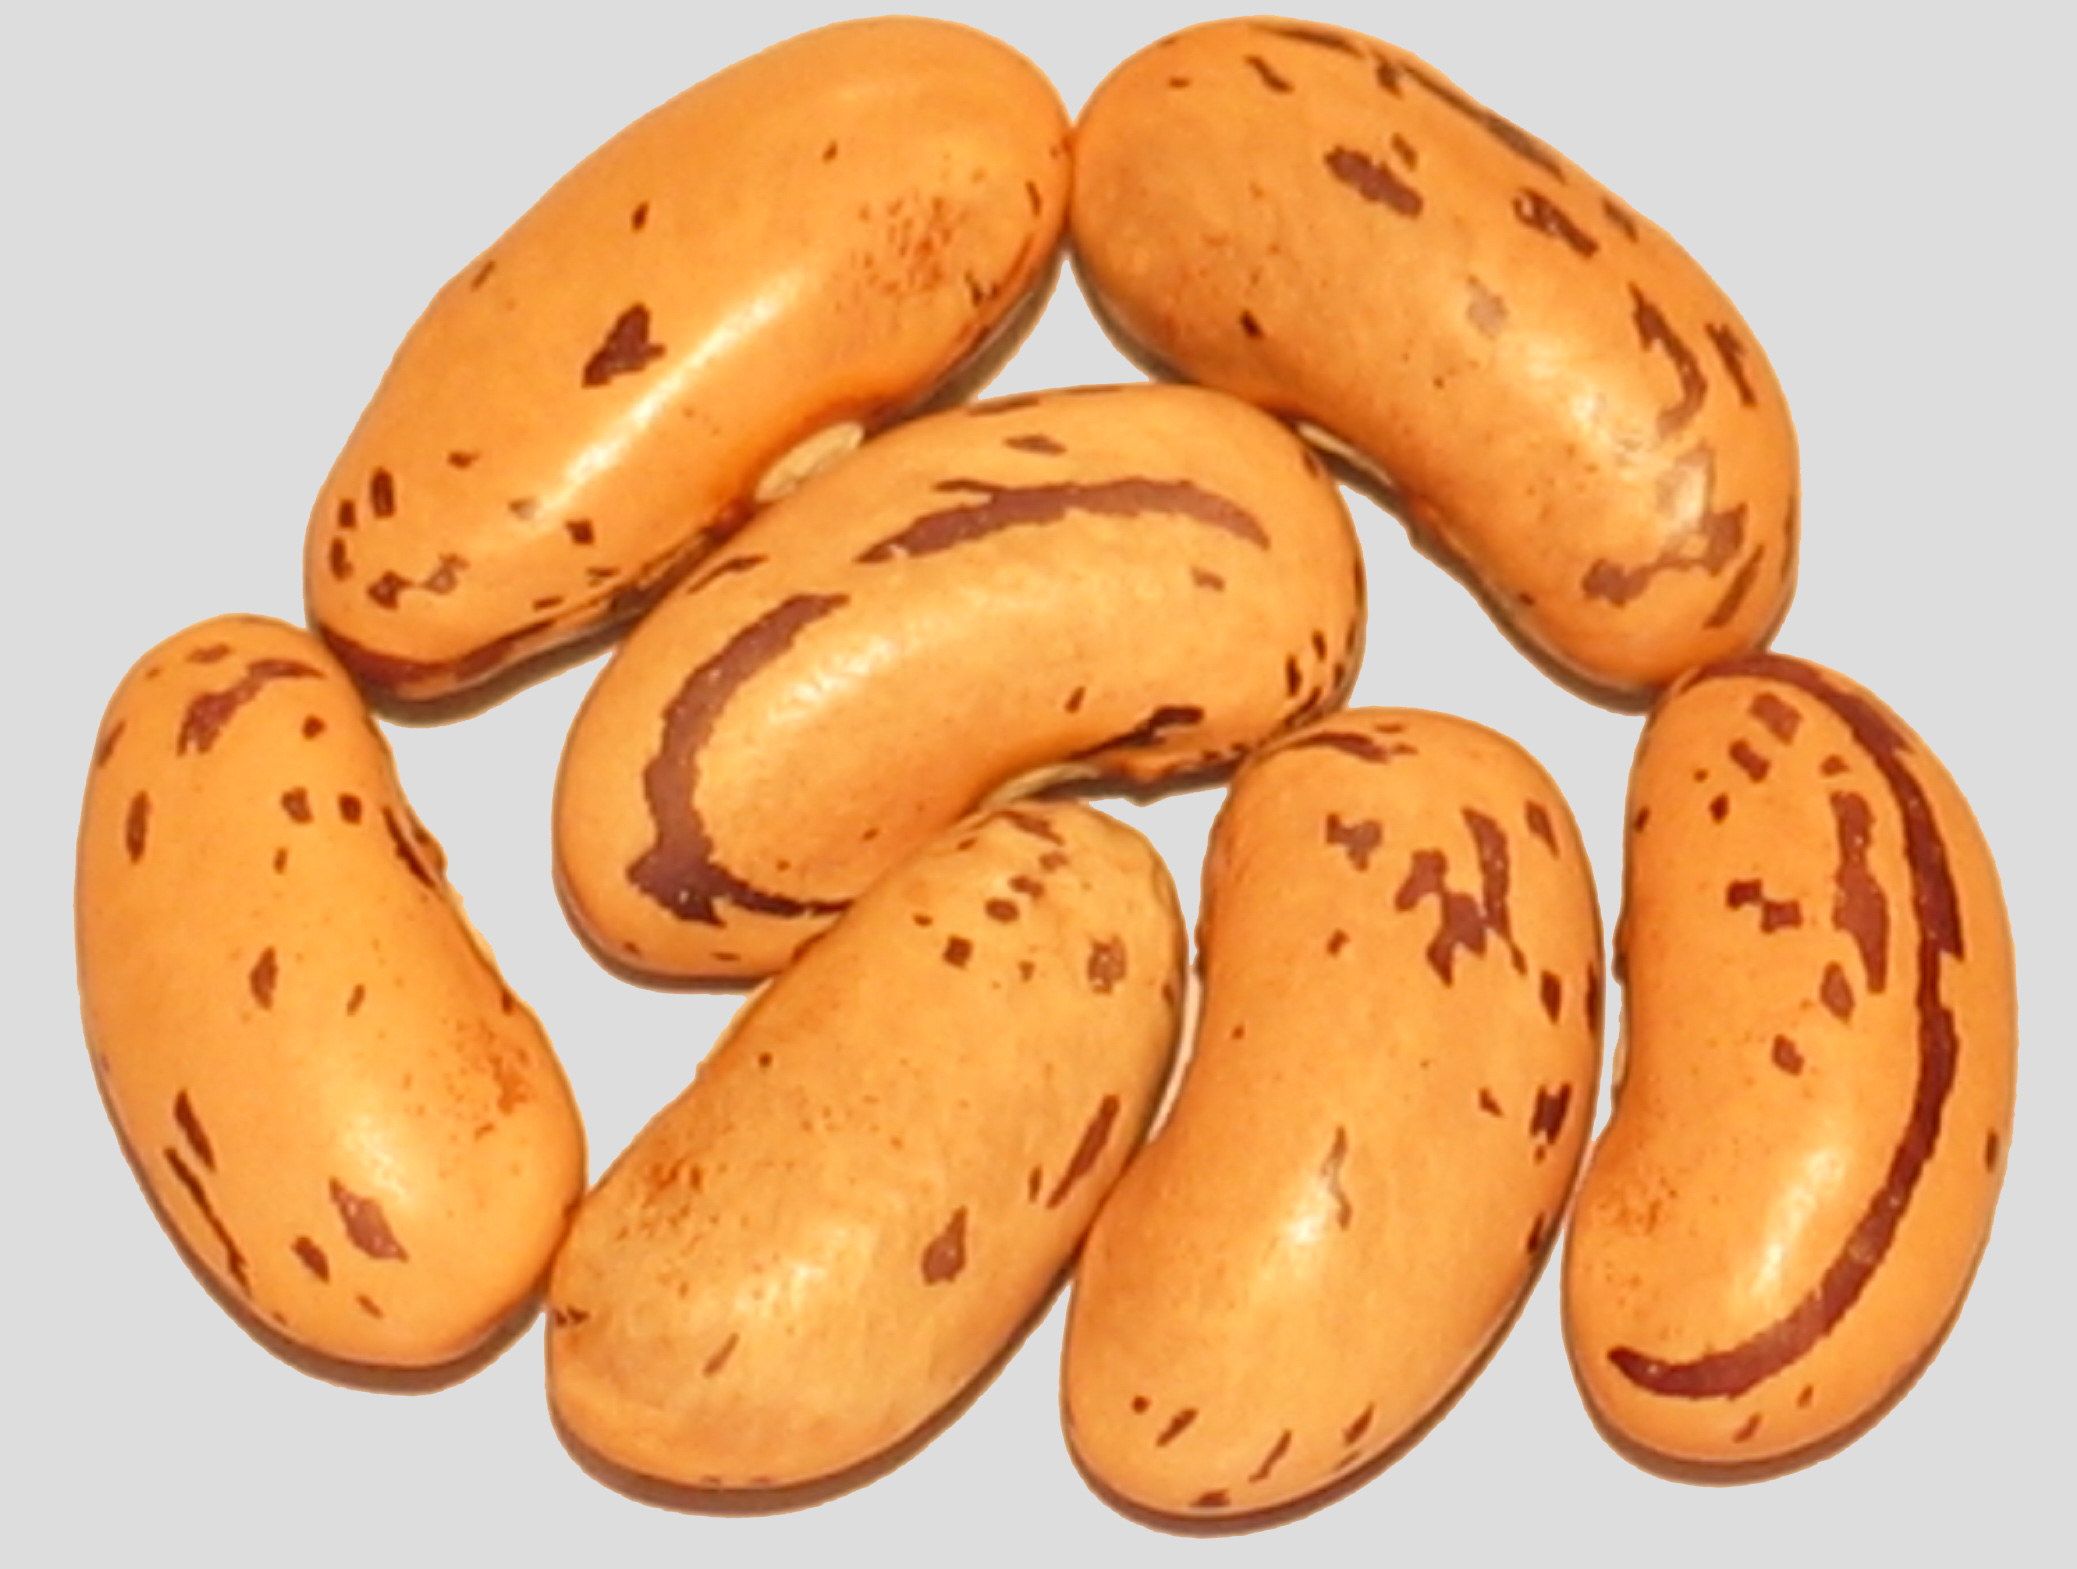 image of Feijao Catarino beans